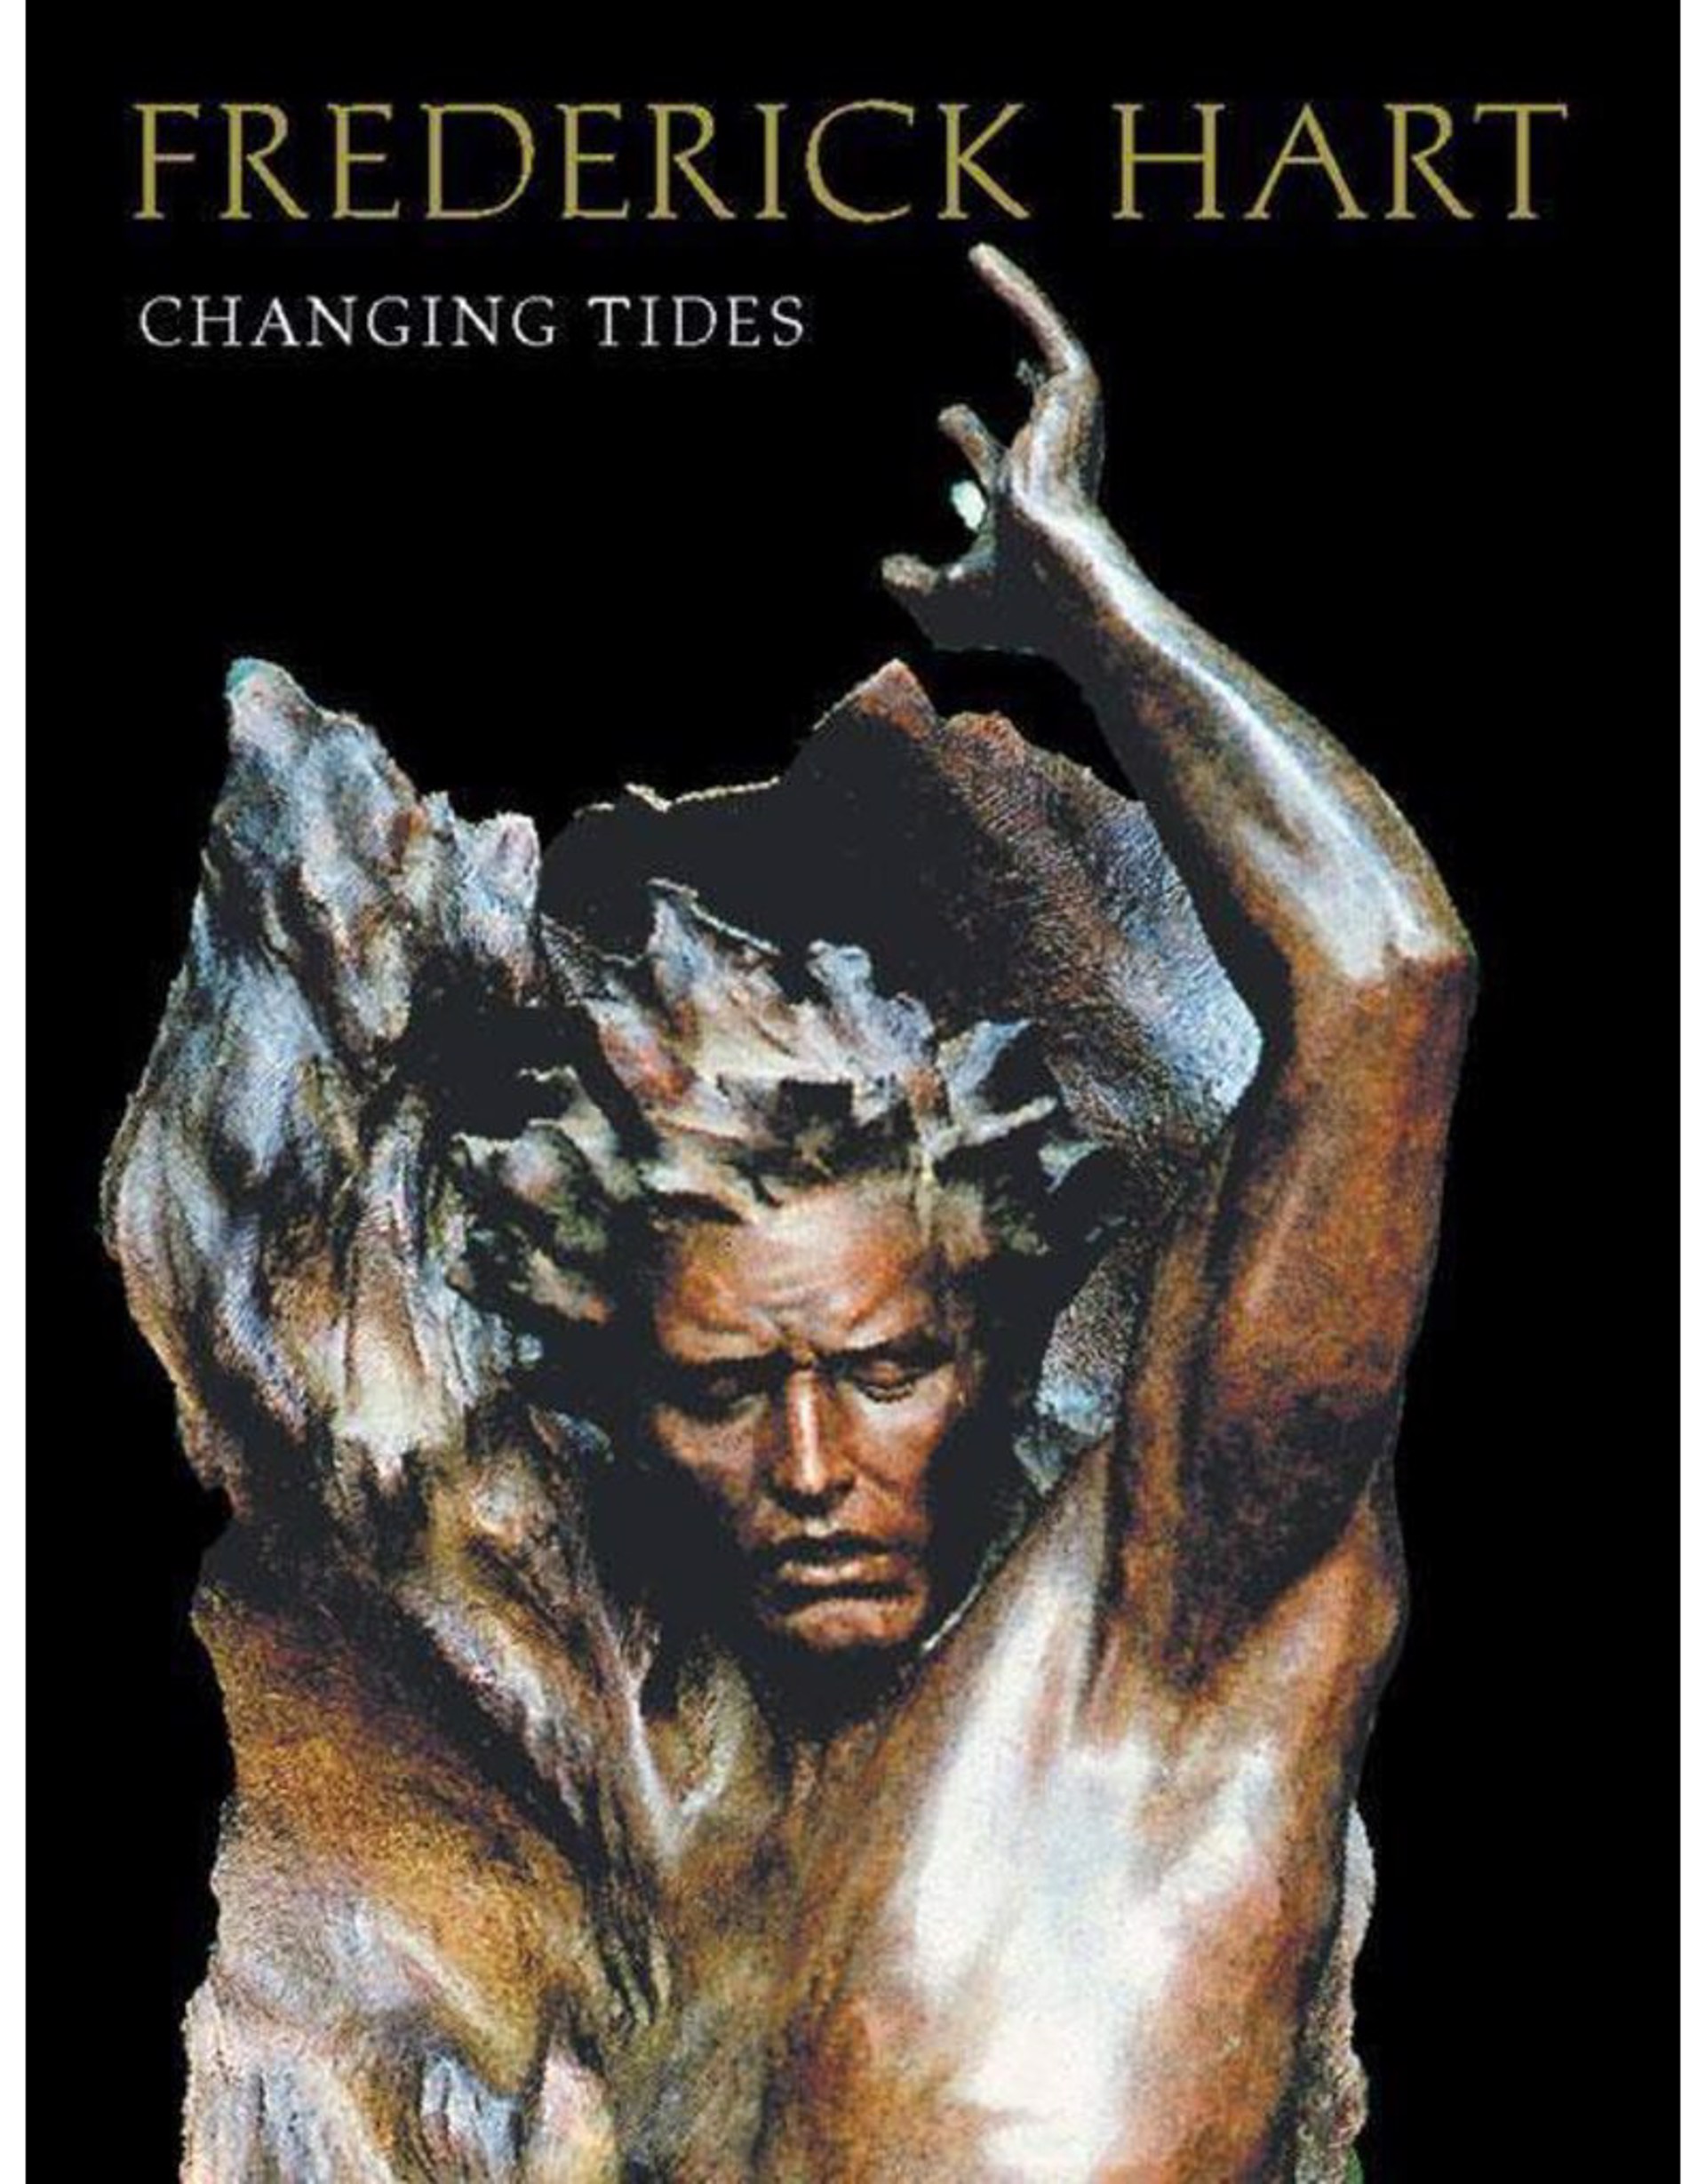 Fredrick Hart Changing Tides by Fredrick Hart